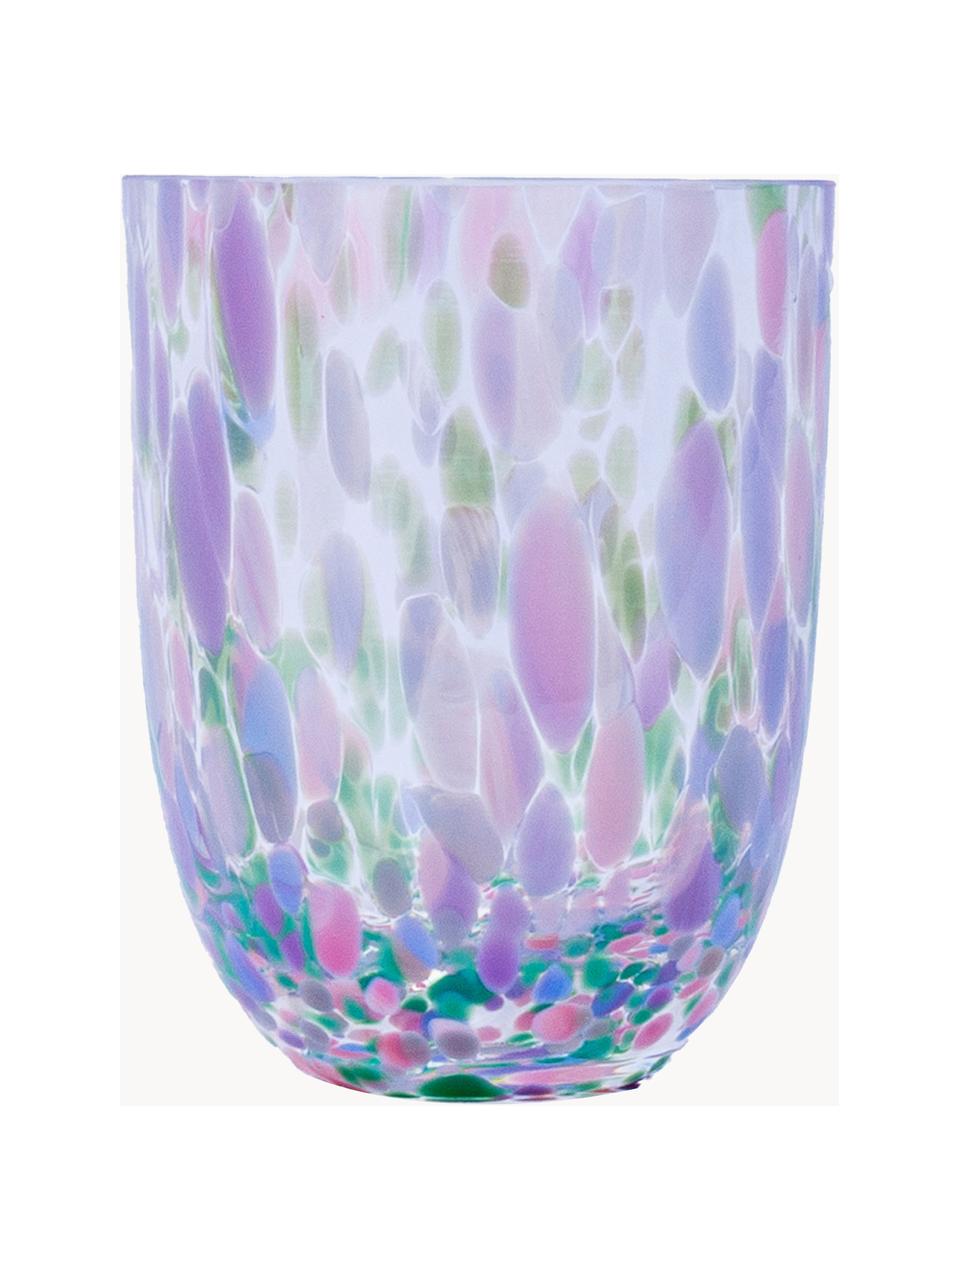 Set de vasos artesanales Big Confetti, 6 uds., Vidrio, Transparente, tonos rosas, azules y verdes, Ø 7 x Al 10 cm, 250 ml